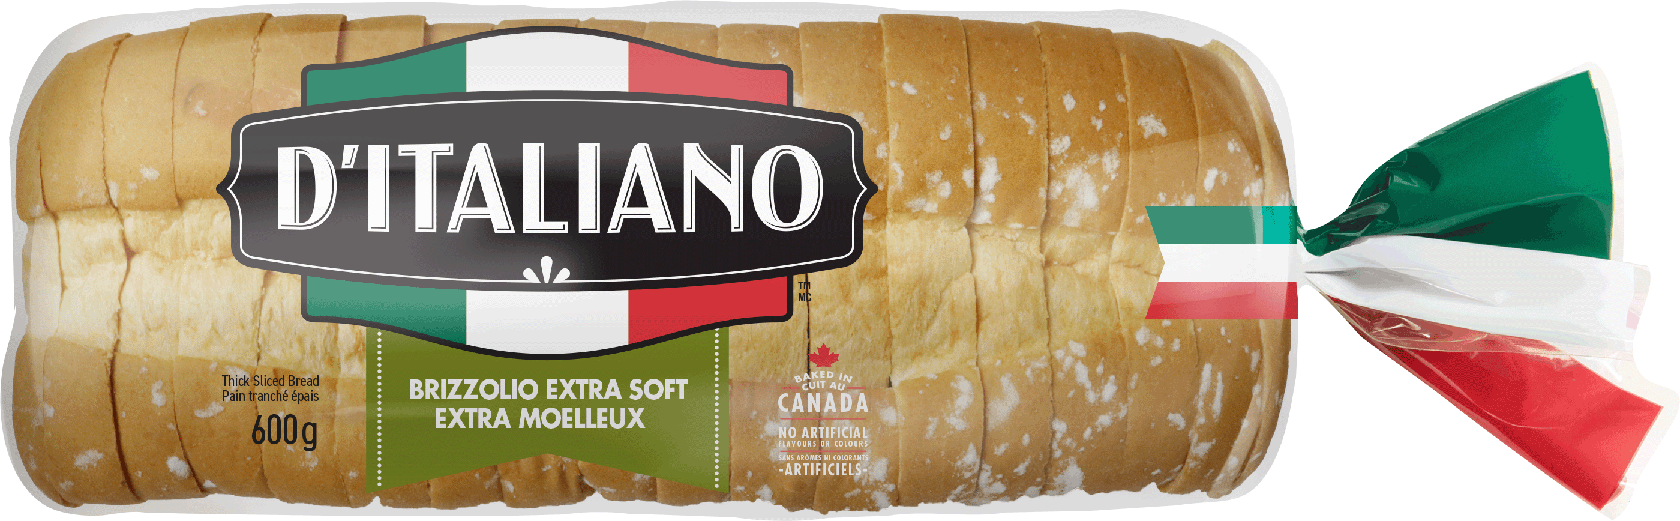 D’Italiano<sup>®</sup> Brizzolio Bread